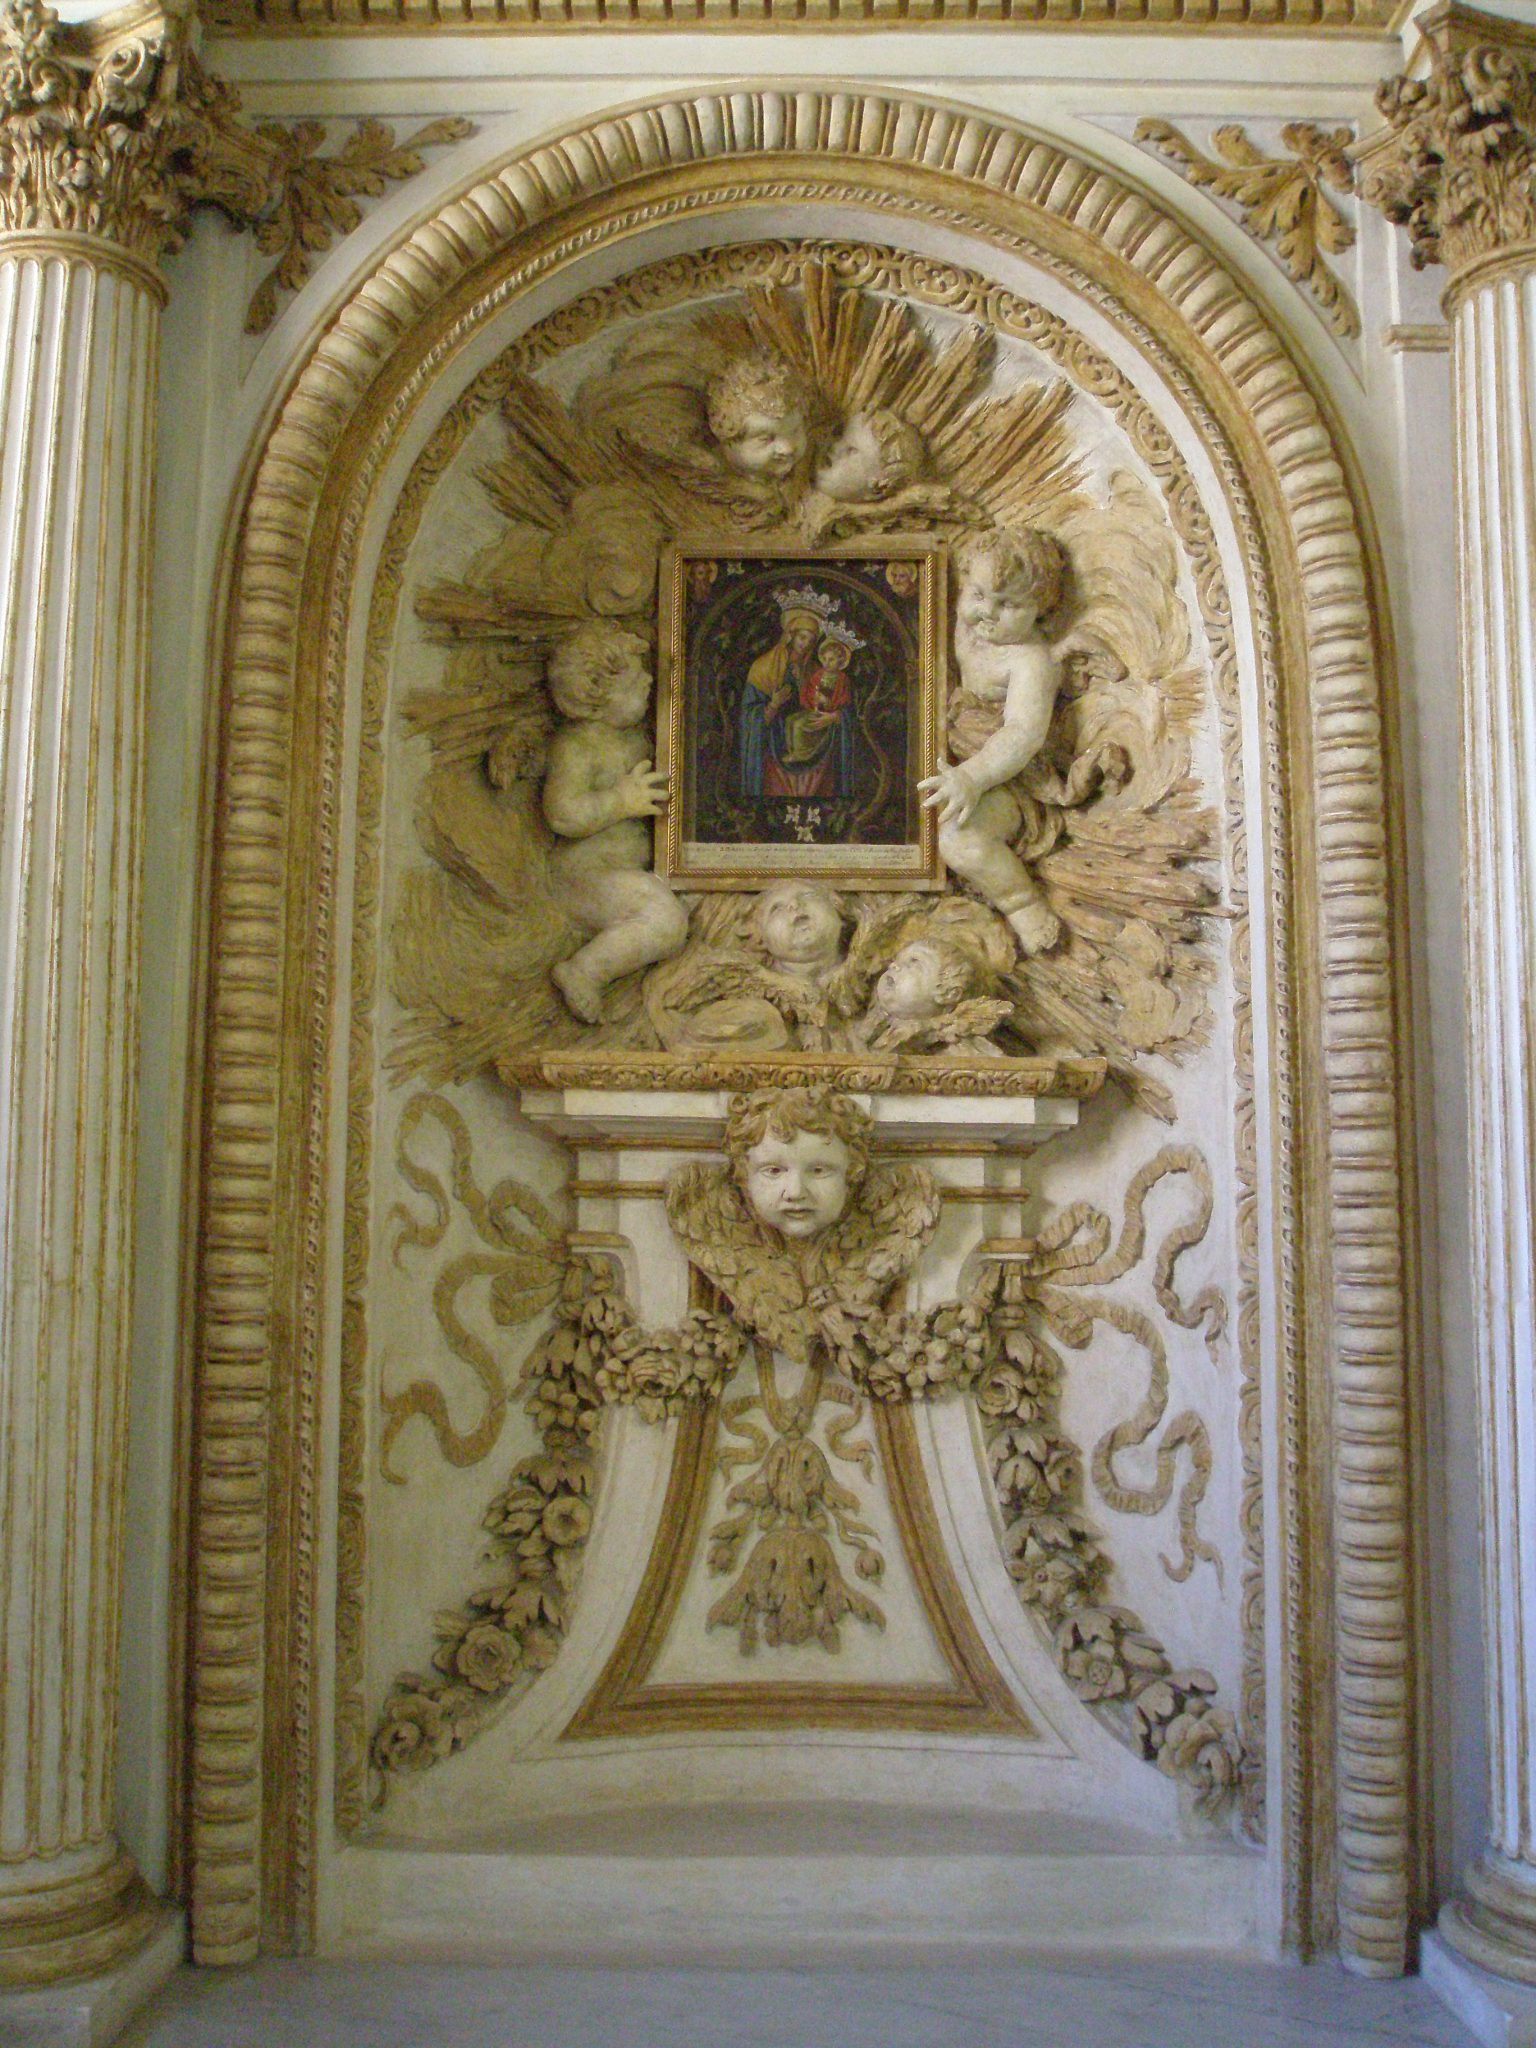 Half-way up La Scala Borrominiana is this wonderful wall relief.